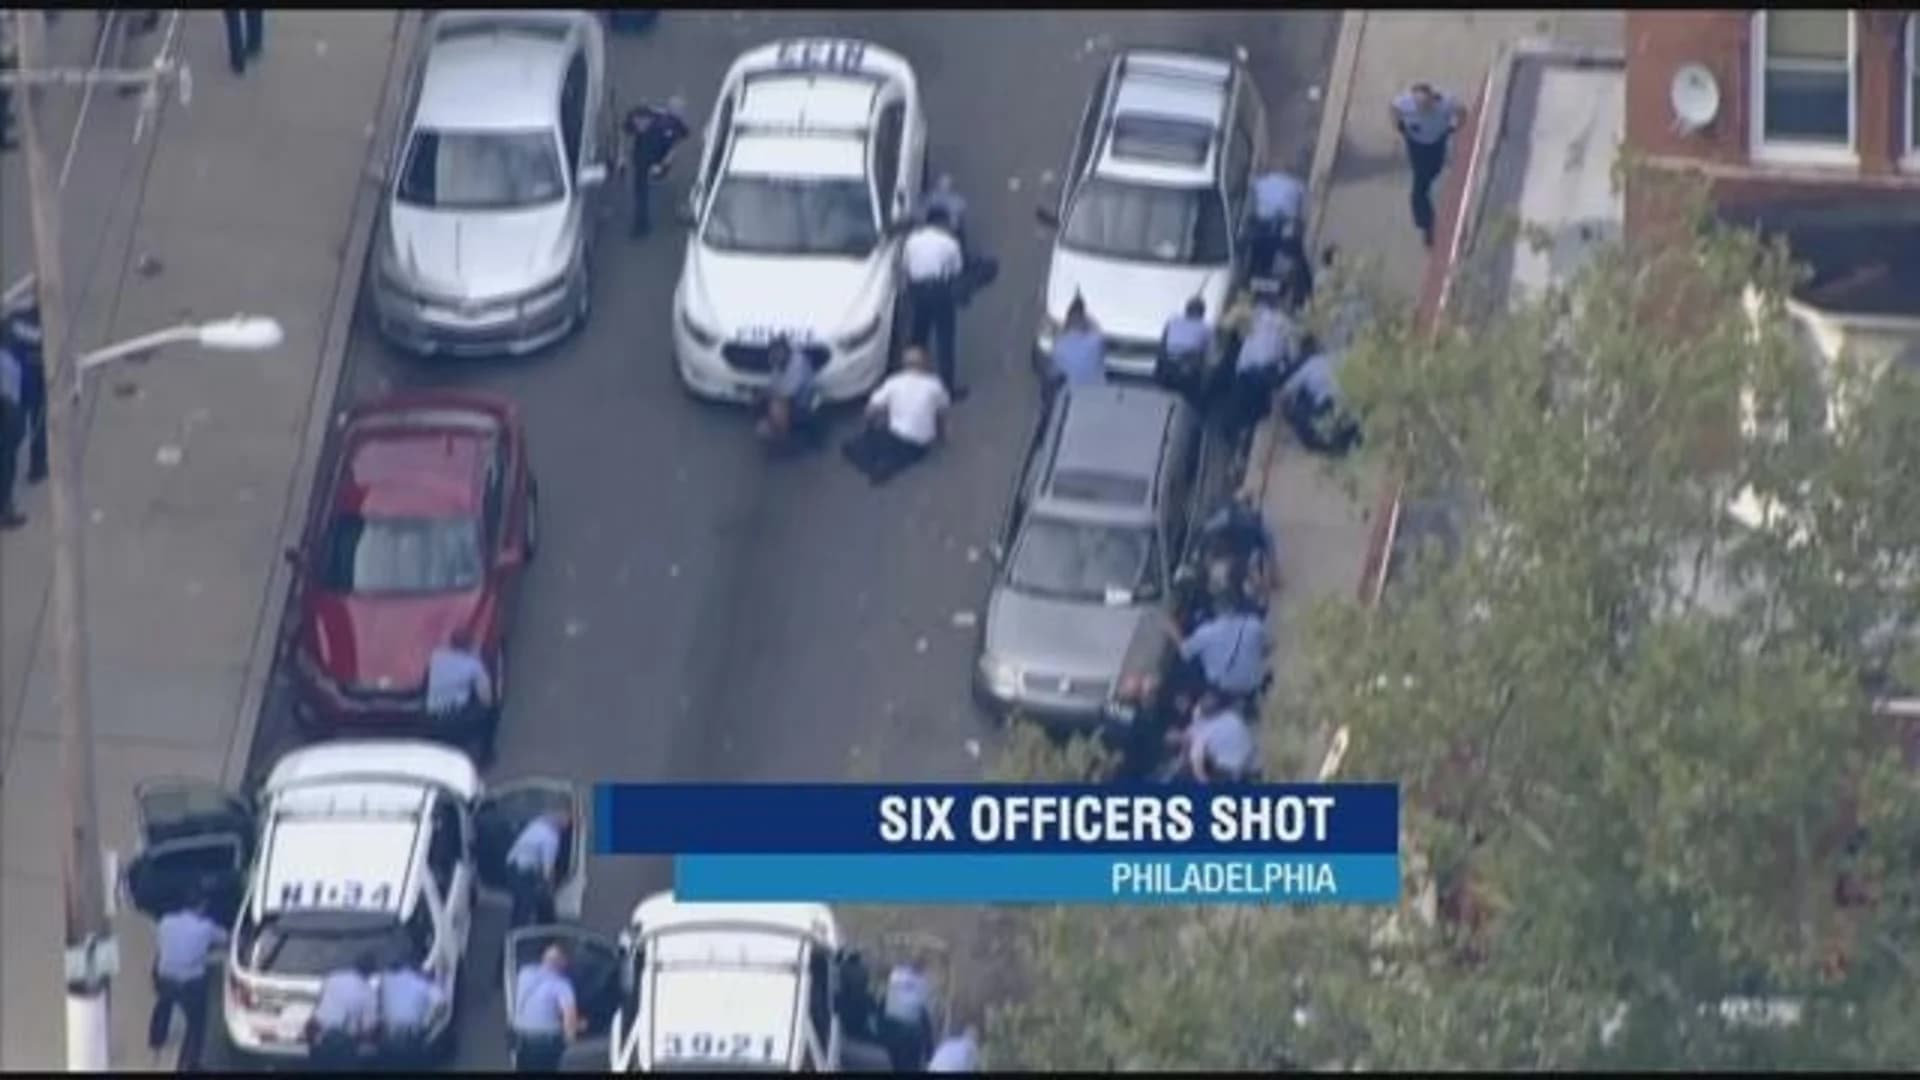 Philadelphia gunman in custody after hourslong standoff